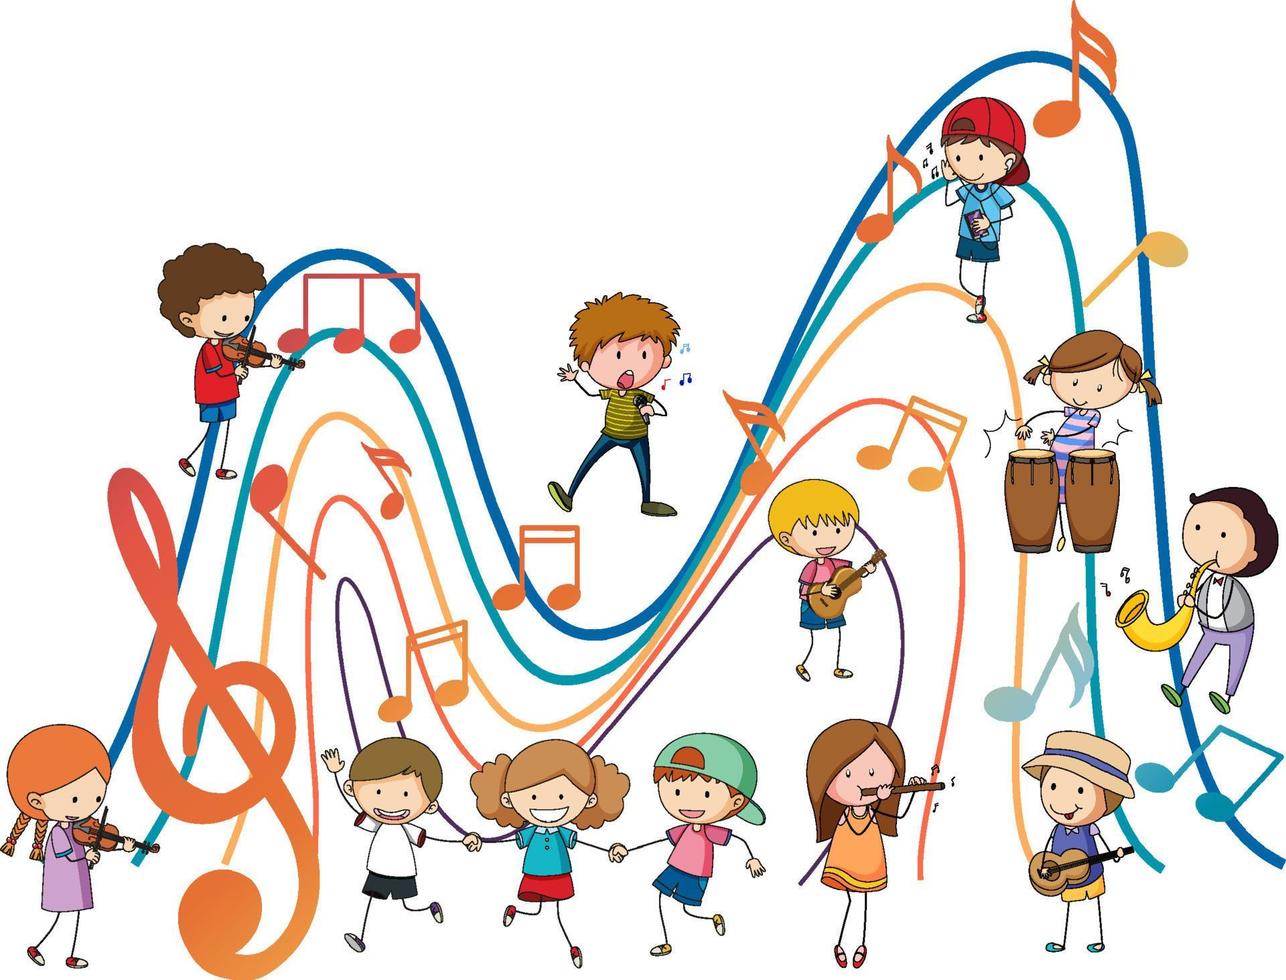 crianças felizes tocando instrumentos musicais com notas musicais em fundo branco vetor